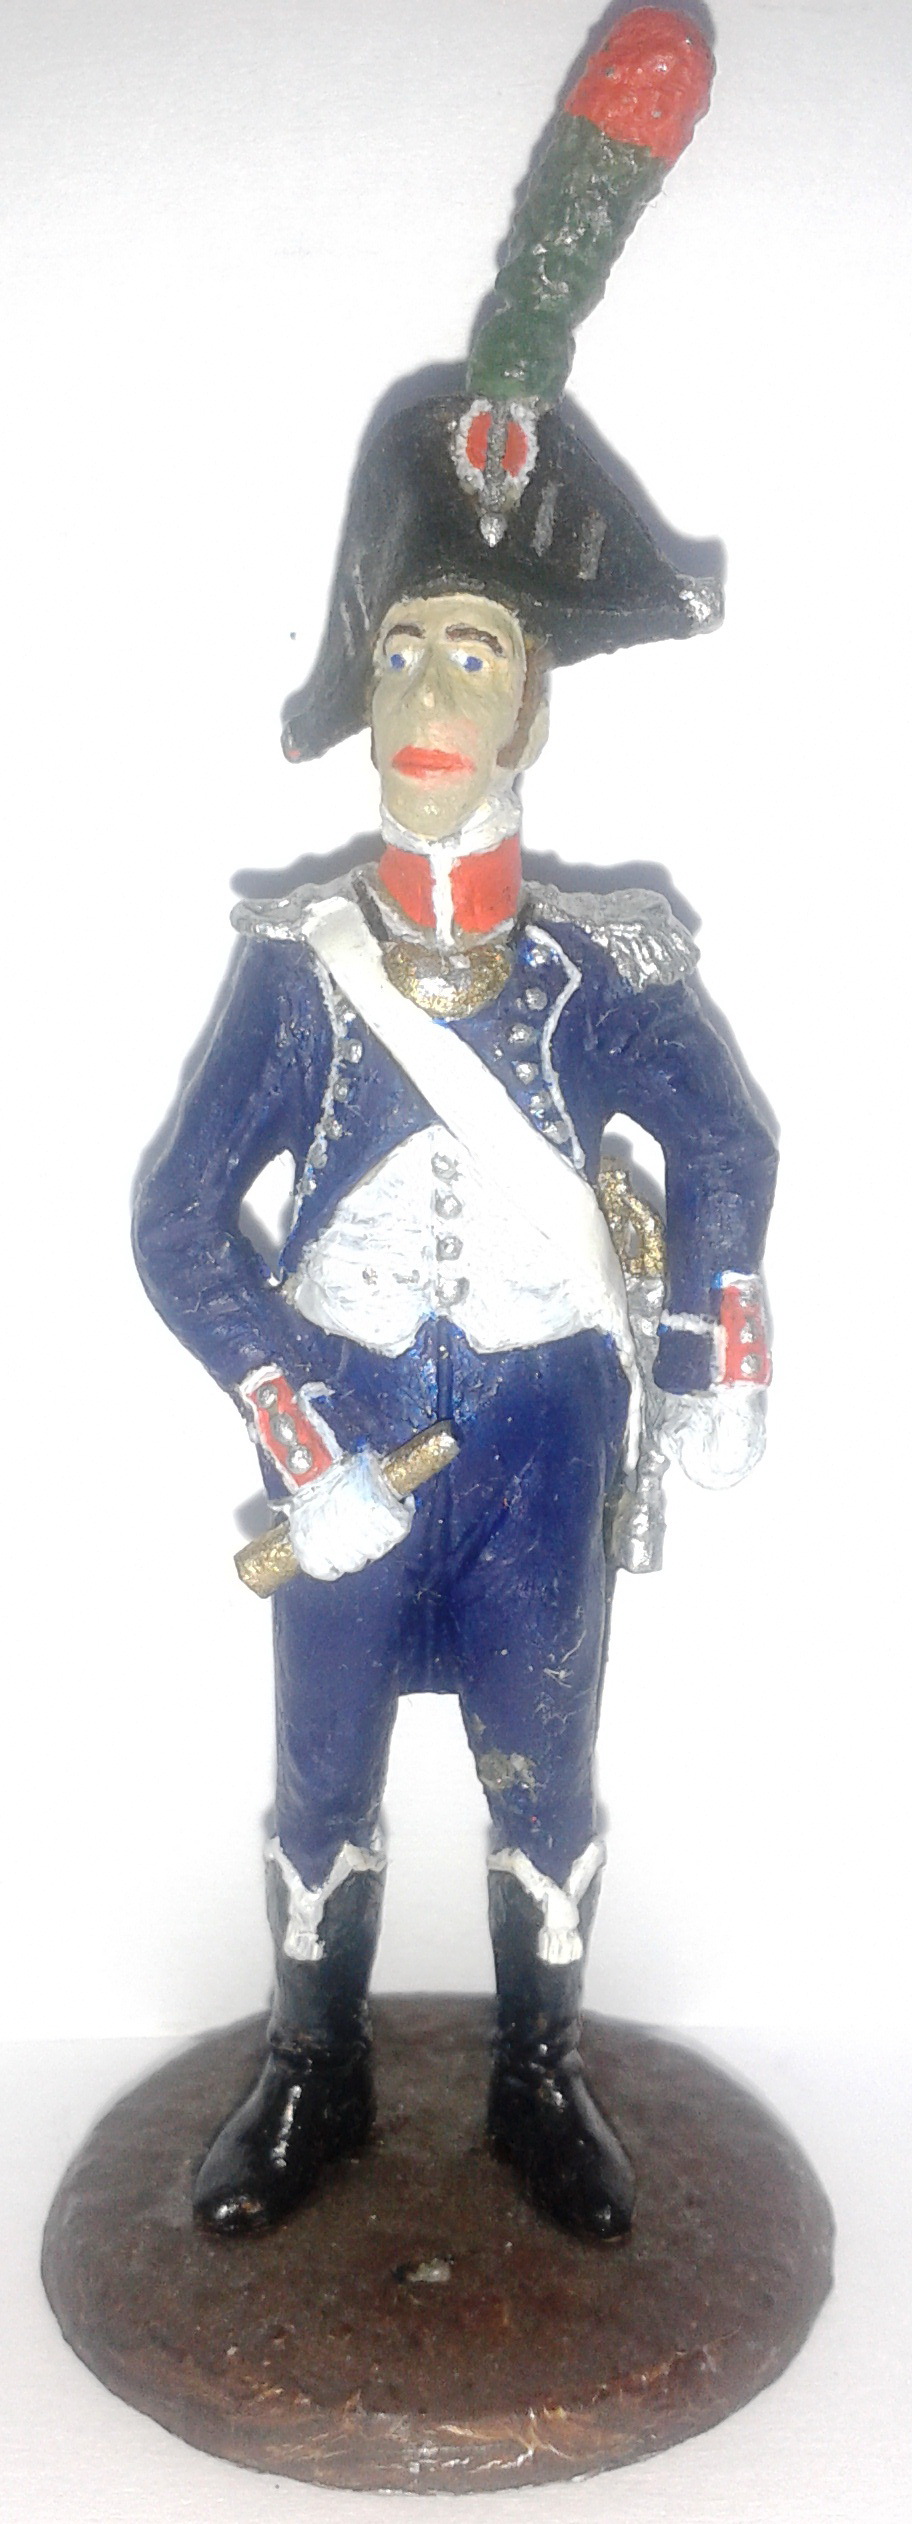 Історична мініатюра. "Офіцер 1-го полку піших єгерів. Імператорська гвардія. Перша Французька імперія. 1804-1815"